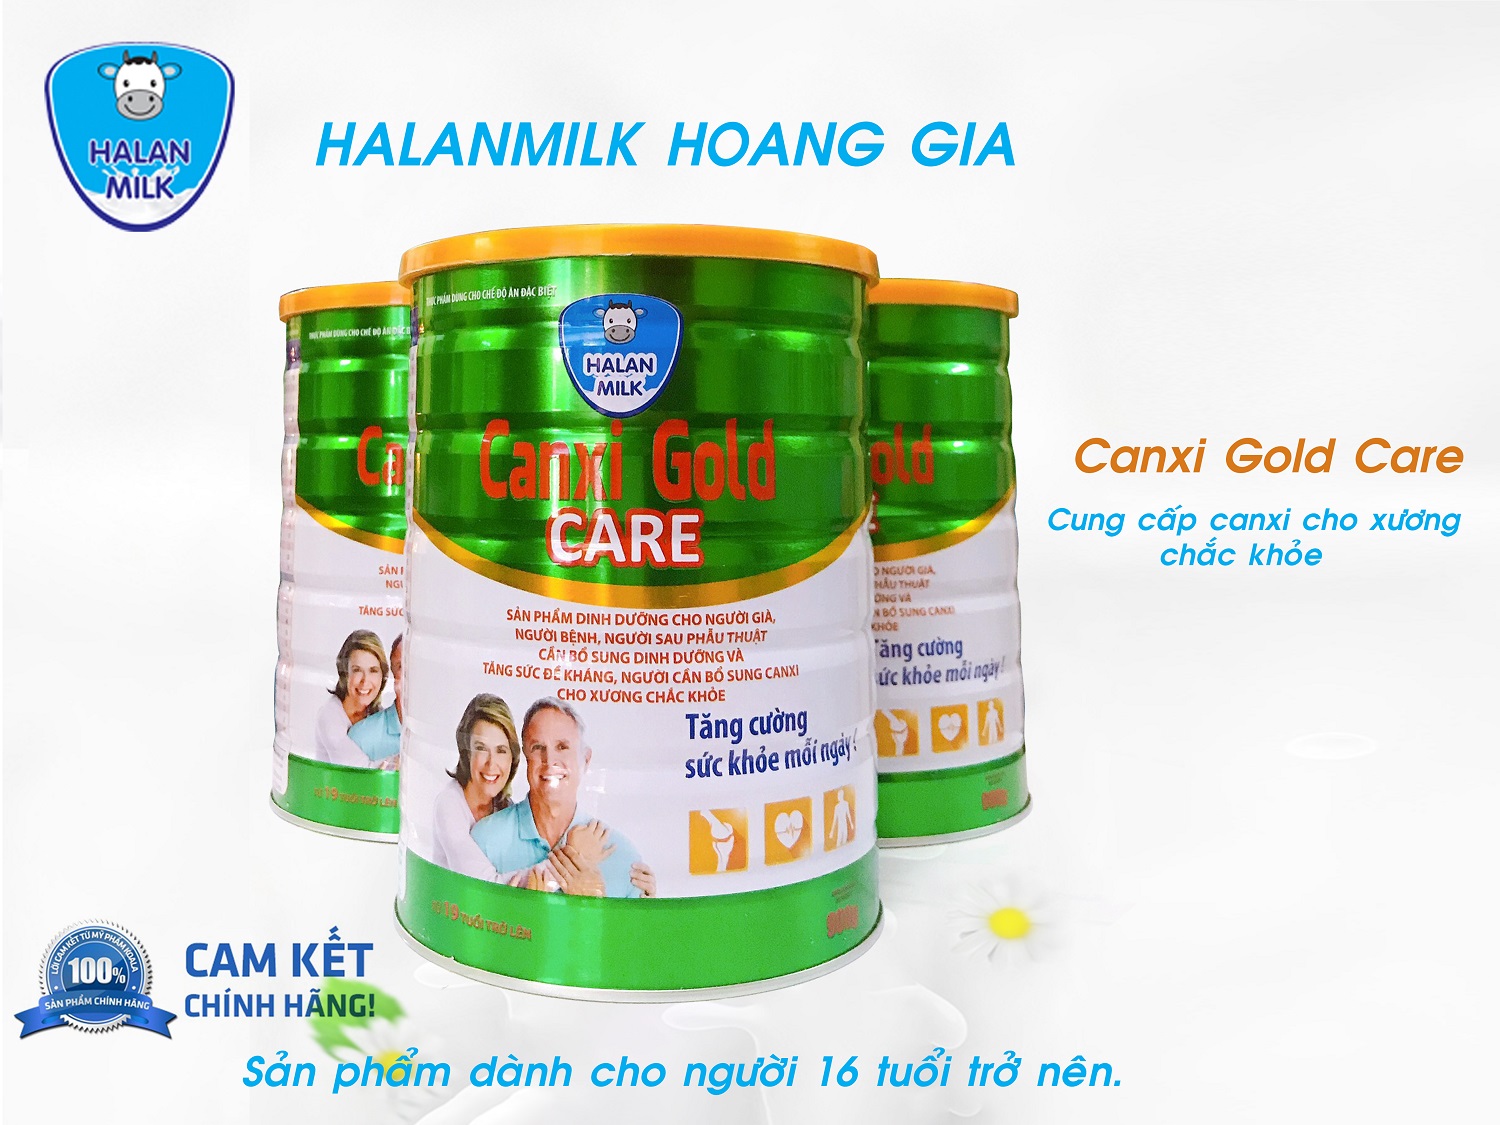 Sữa Canxi Gold Care - Halan Milk - 400gr - Canxi cho xương chắc khỏe